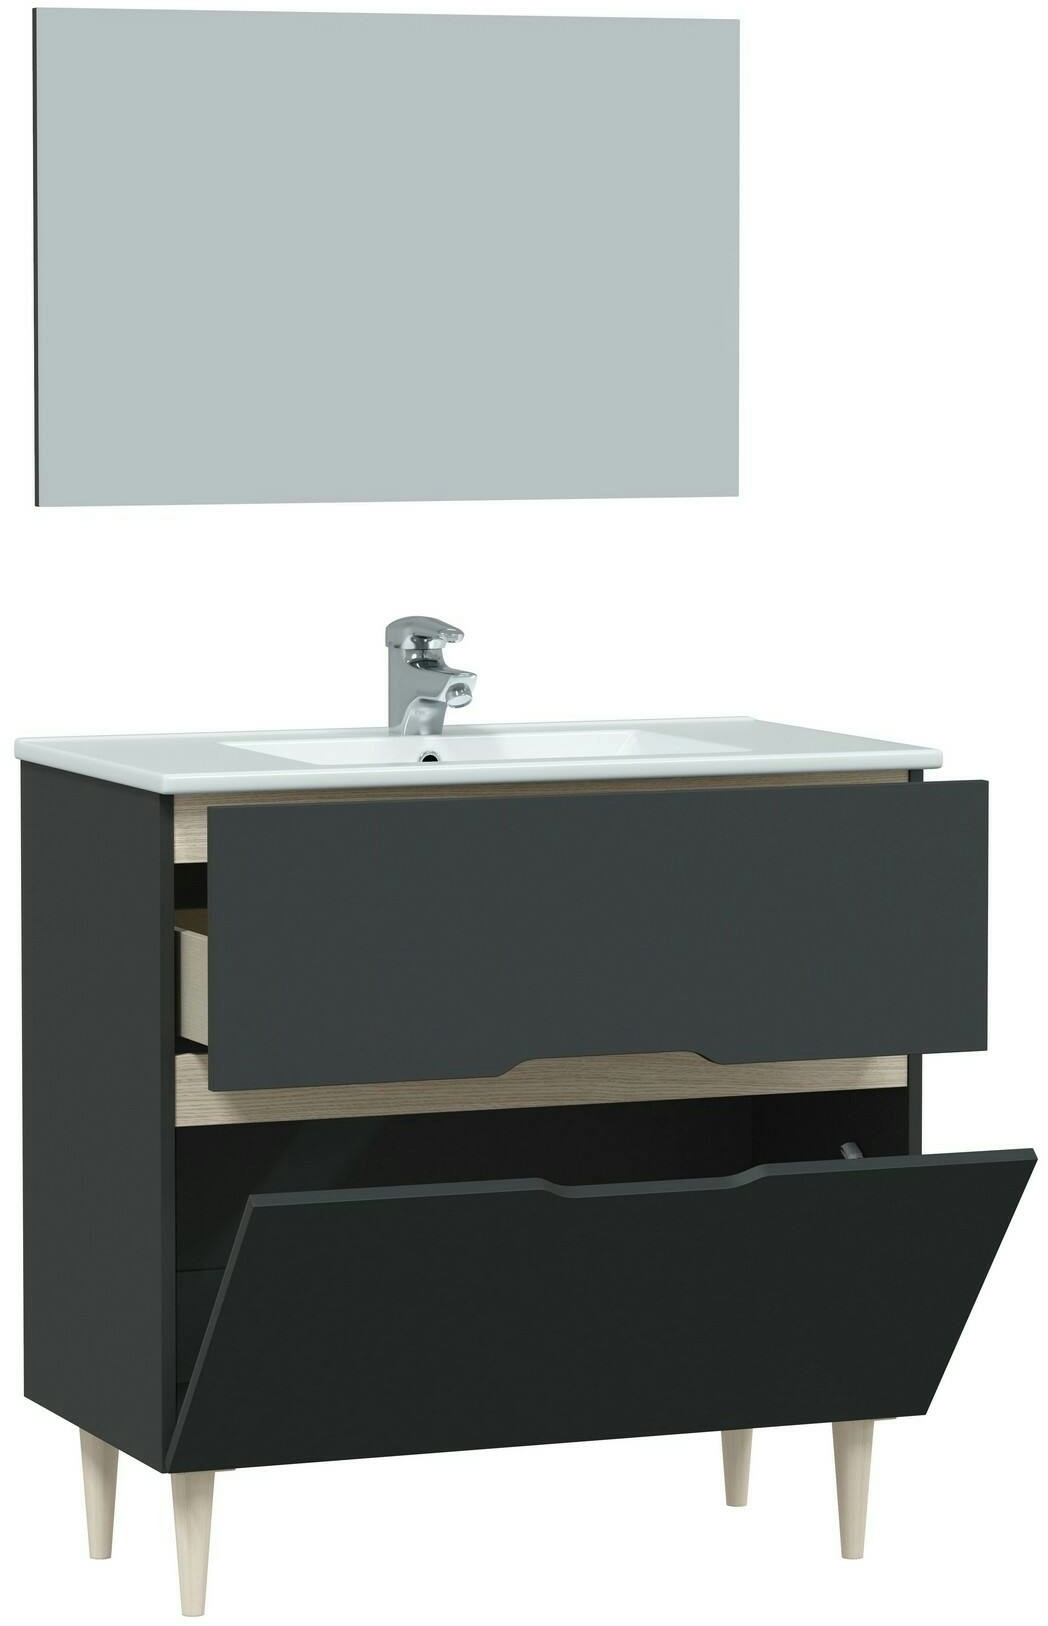 Dmora Waschtischunterschrank Yarmouth, Badezimmer-Waschtischunterschrank, Badezimmerschrank mit Spiegel, 80x45h80 cm, Anthrazit und Eiche